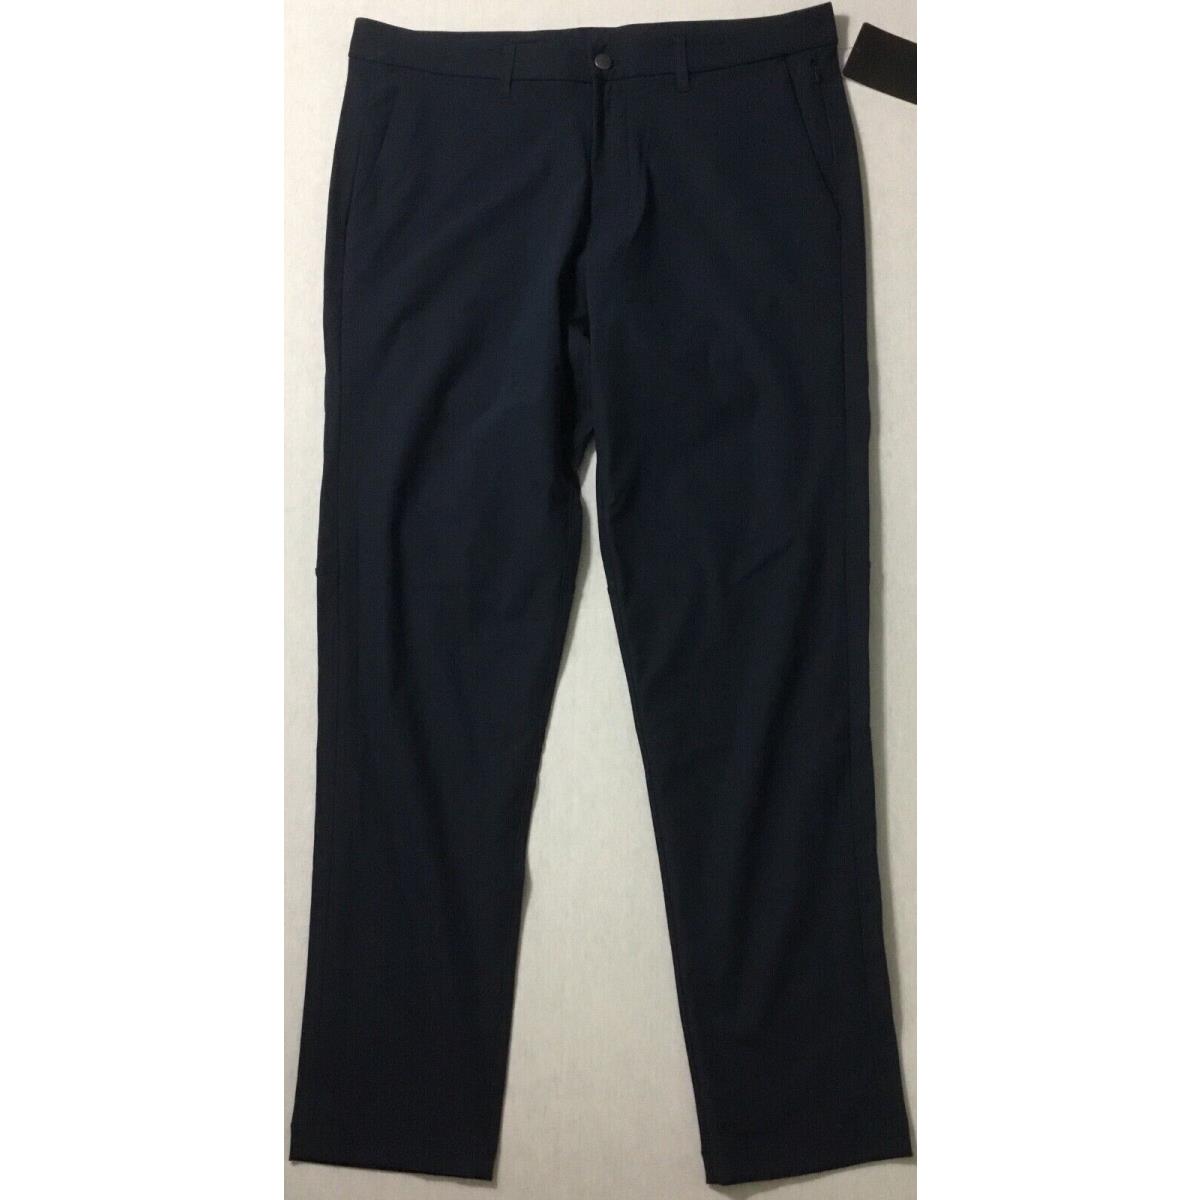 Lululemon Men s Pants Commission Pant Slim 34 L LM5439S Trnv True Navy Size 34